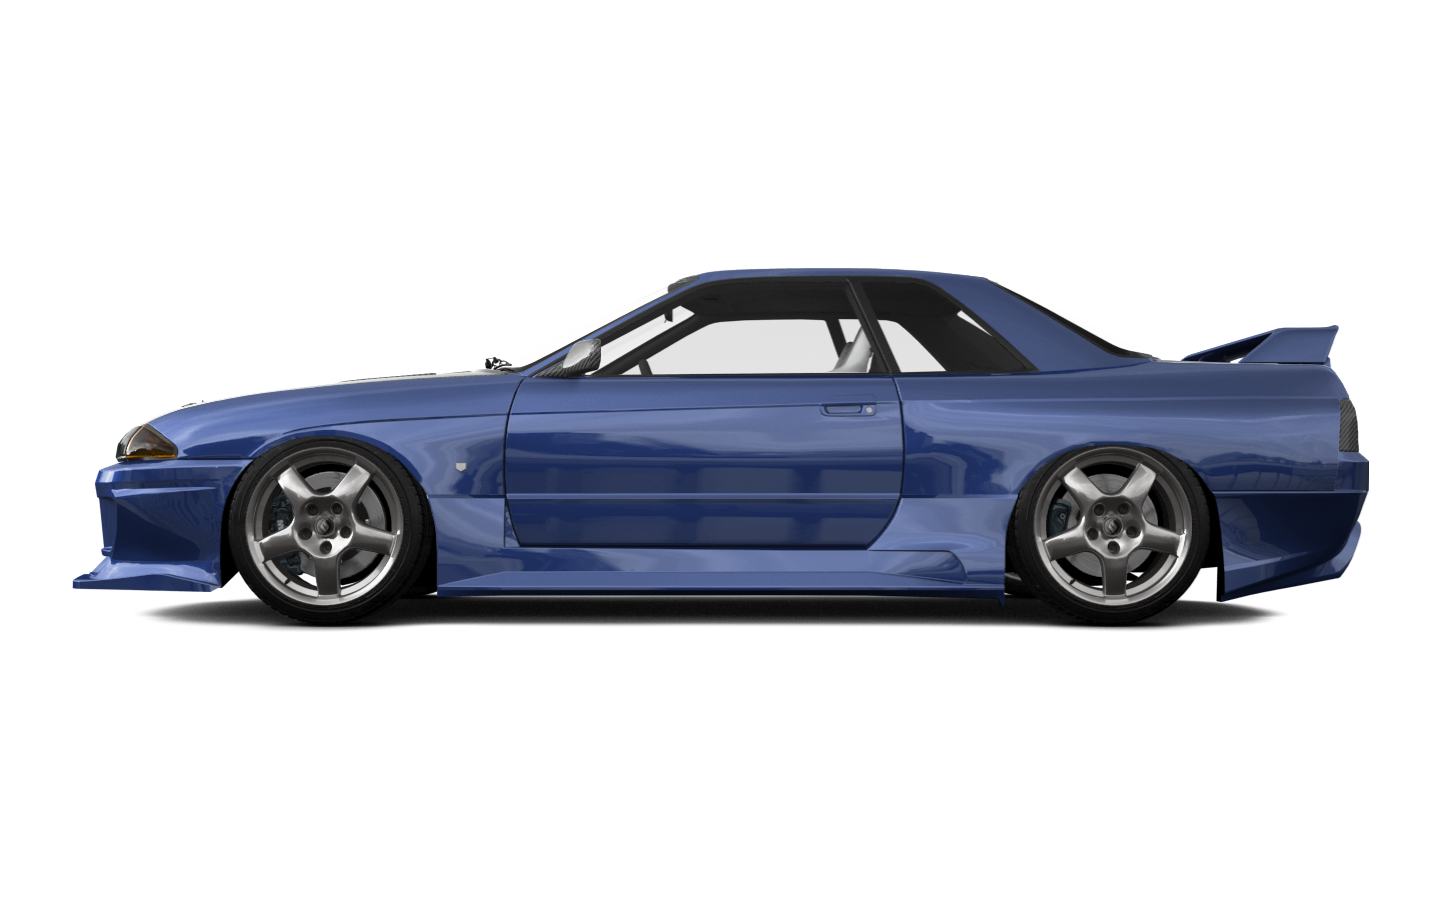 Nissan Skyline GT-R 2 Door Coupe 1989 tuning